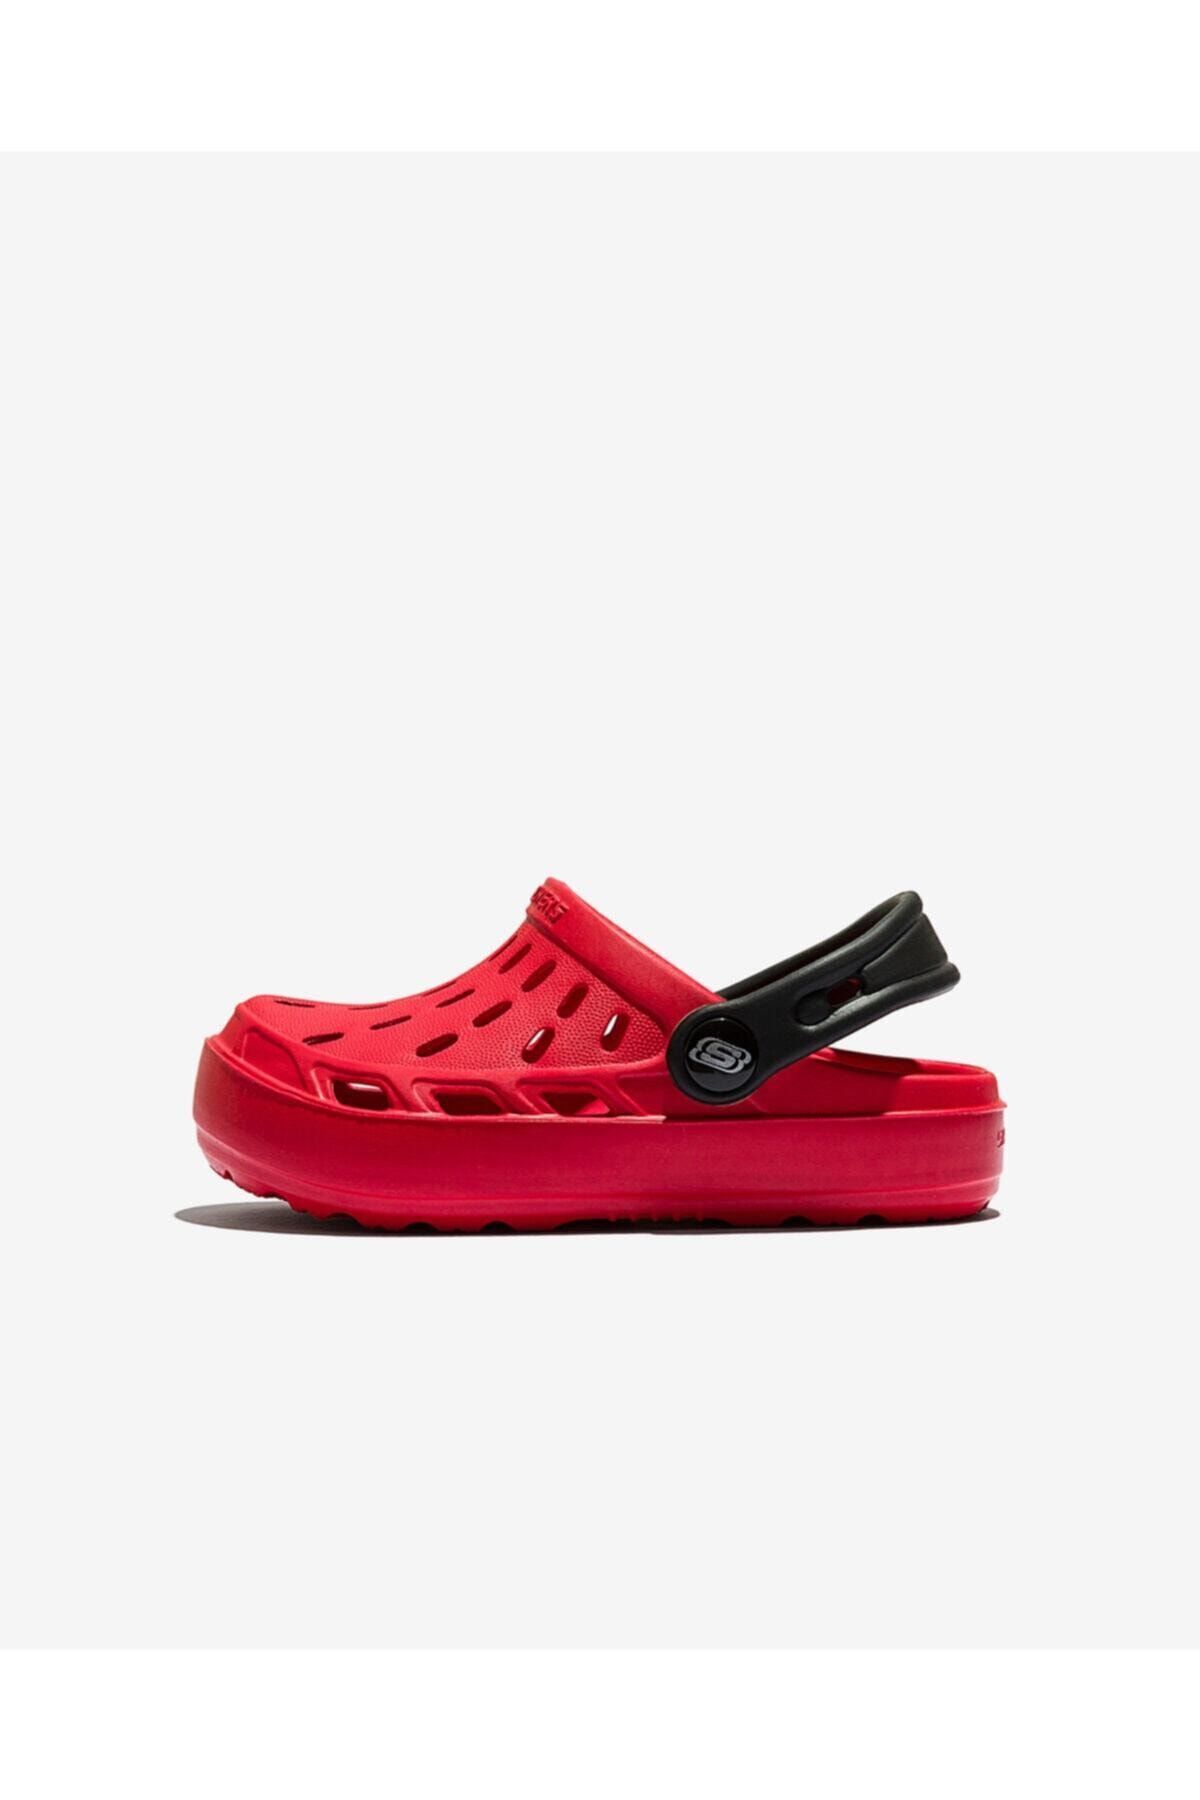 Skechers Cali Gear Küçük Erkek Çocuk Kırmızı Sandalet